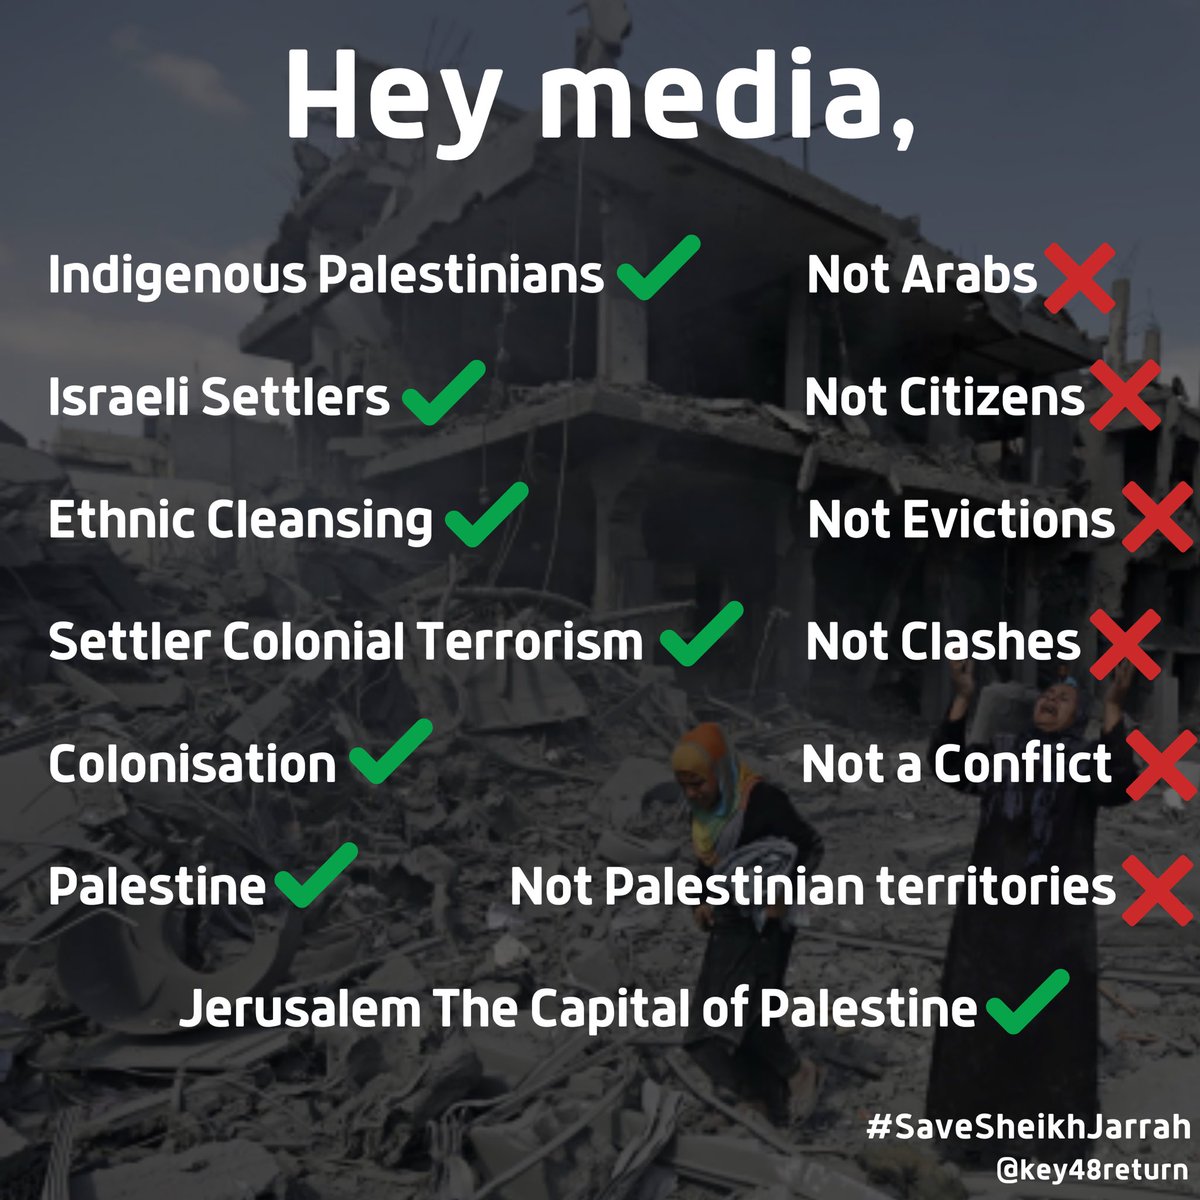 Dear @BBCNews @CNN @NBCNews @FoxNews @SkyNews #SaveSheikhJarrah